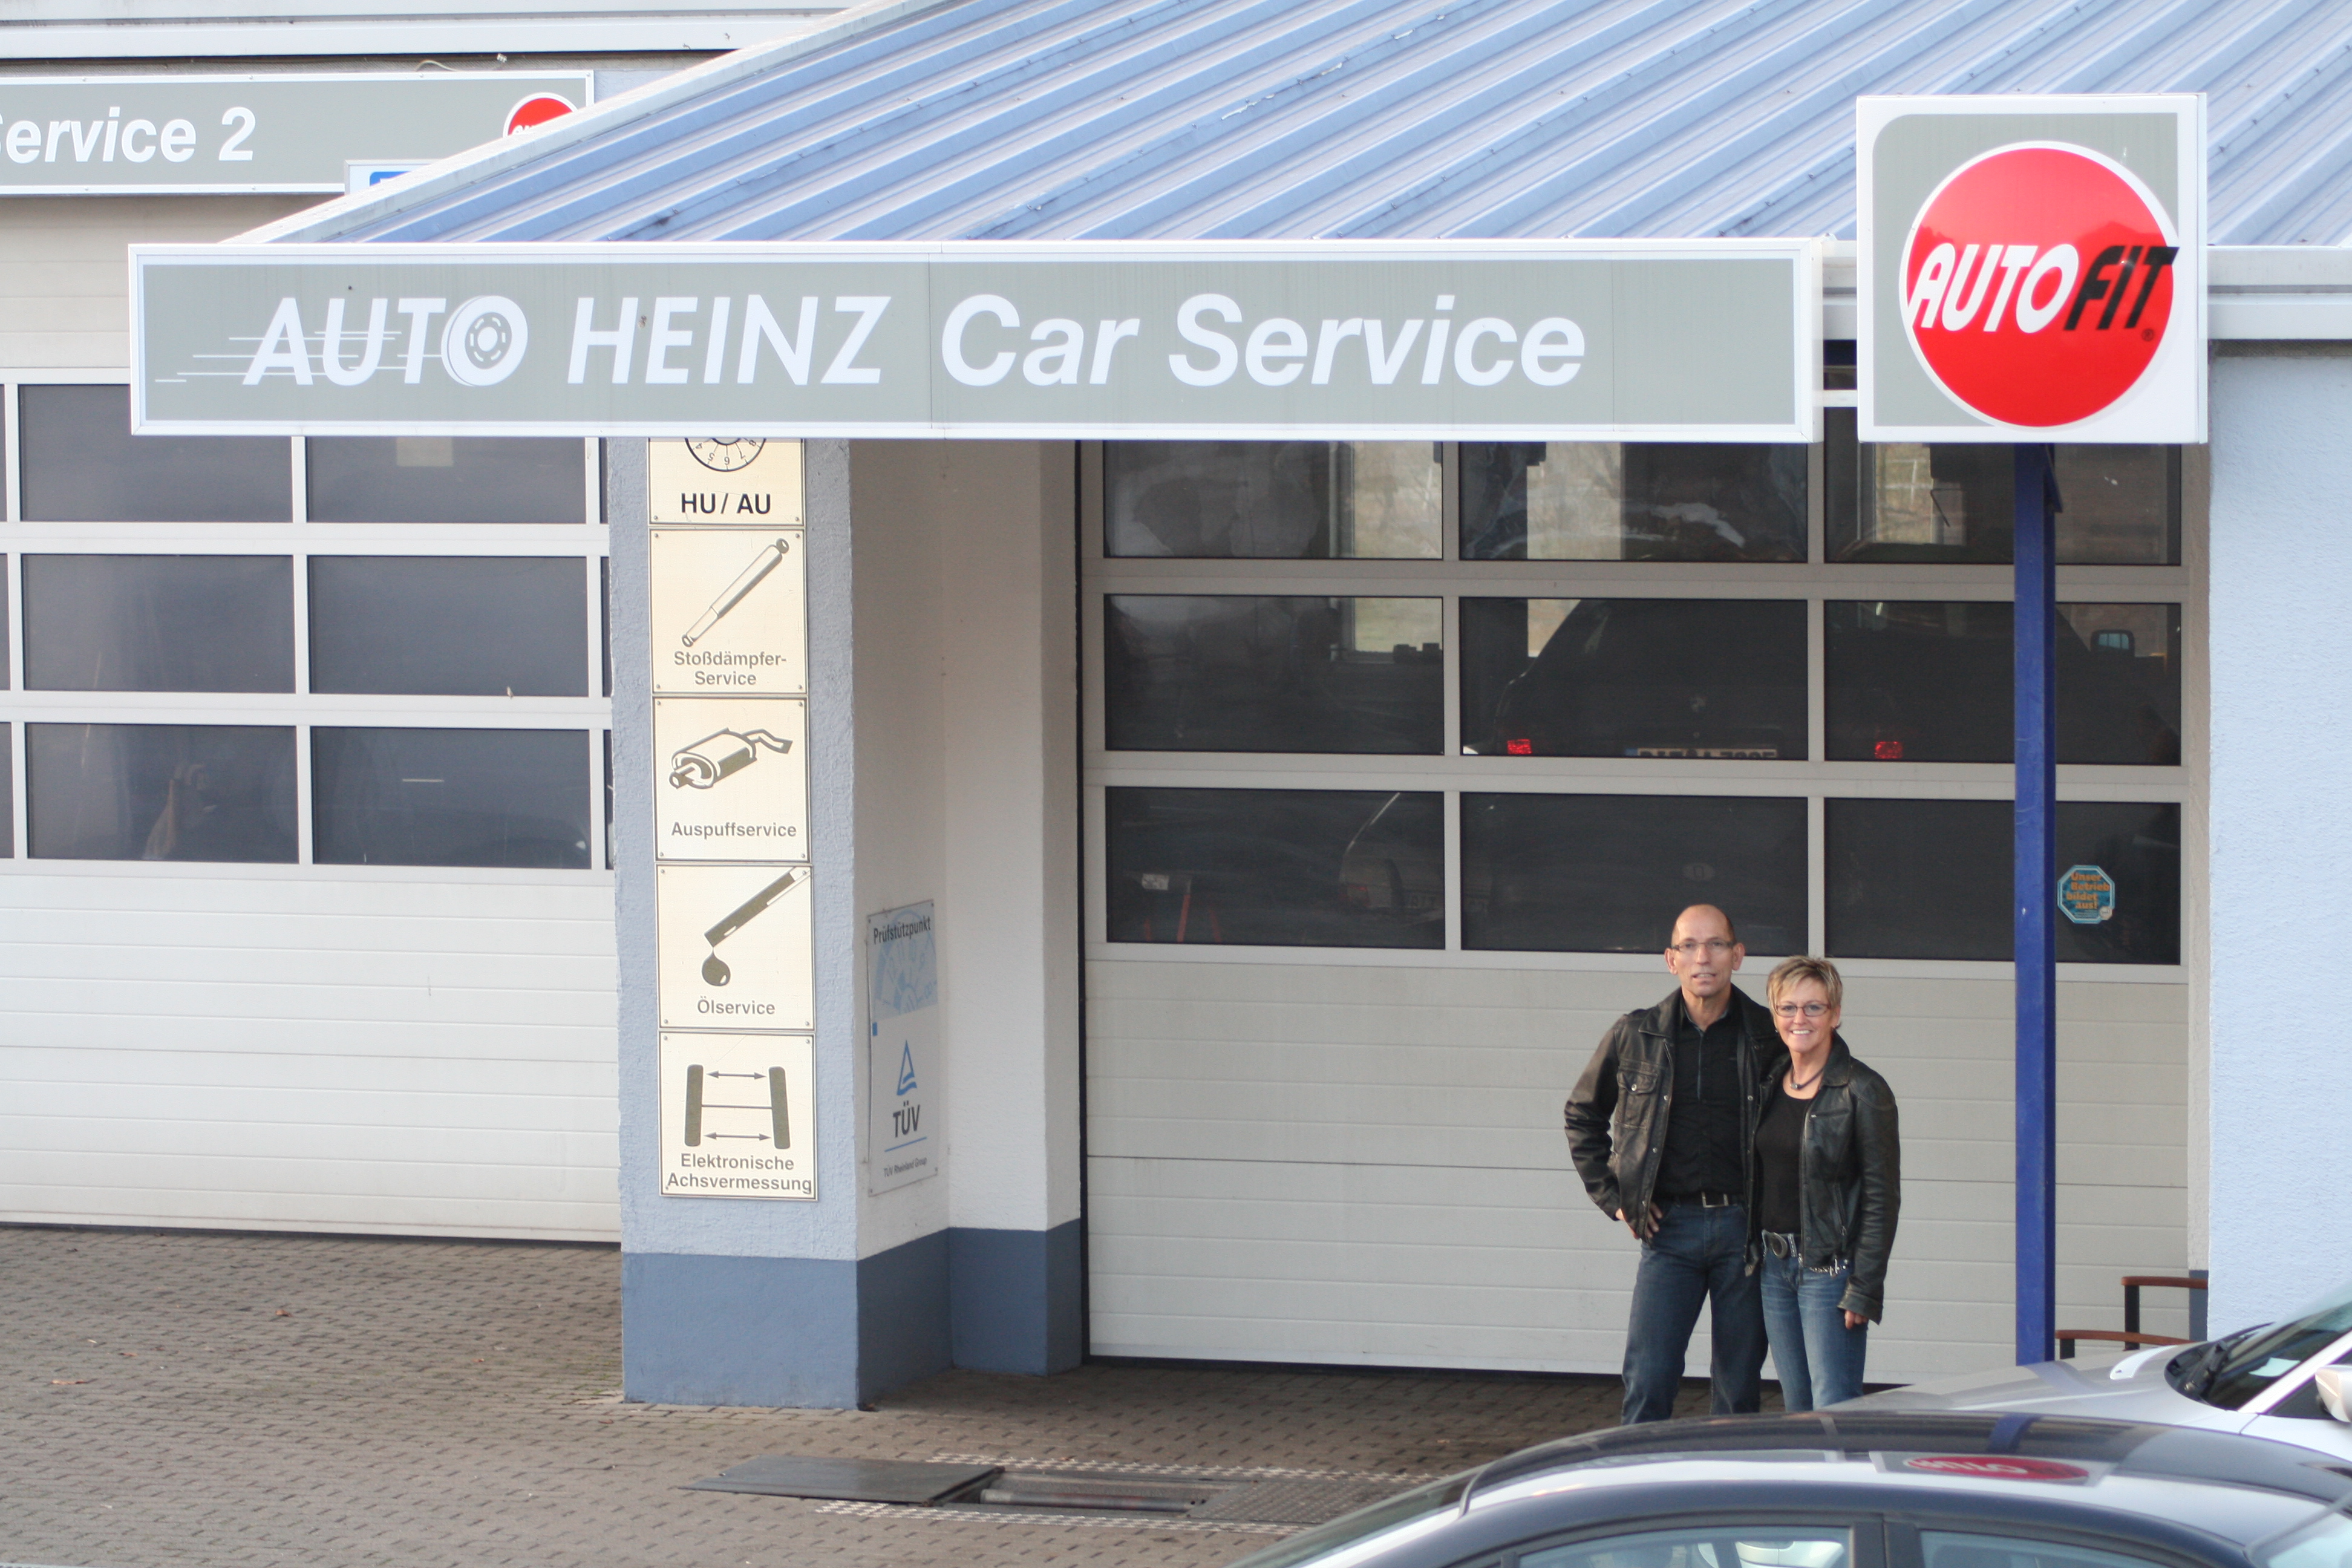 Auto Heinz – Auto-Heinz